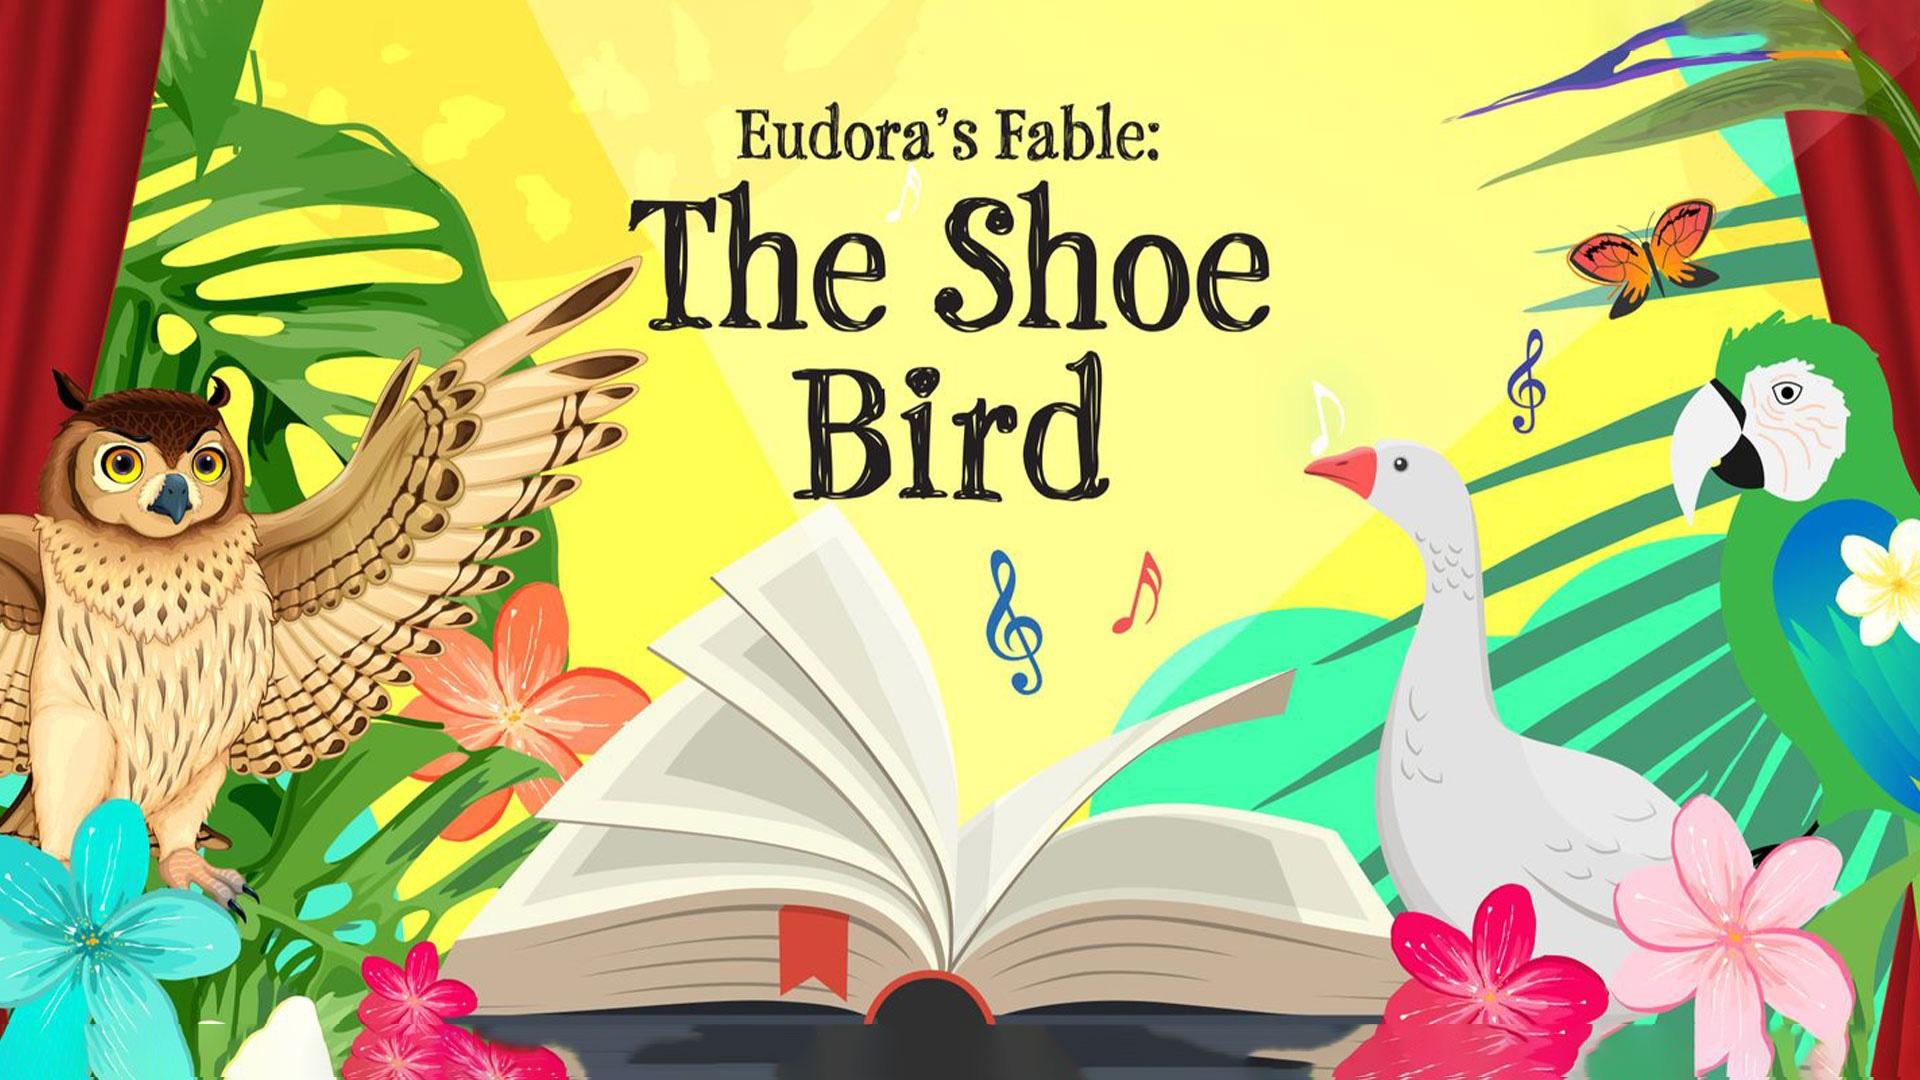 Eudora's Fable: The Shoe Bird